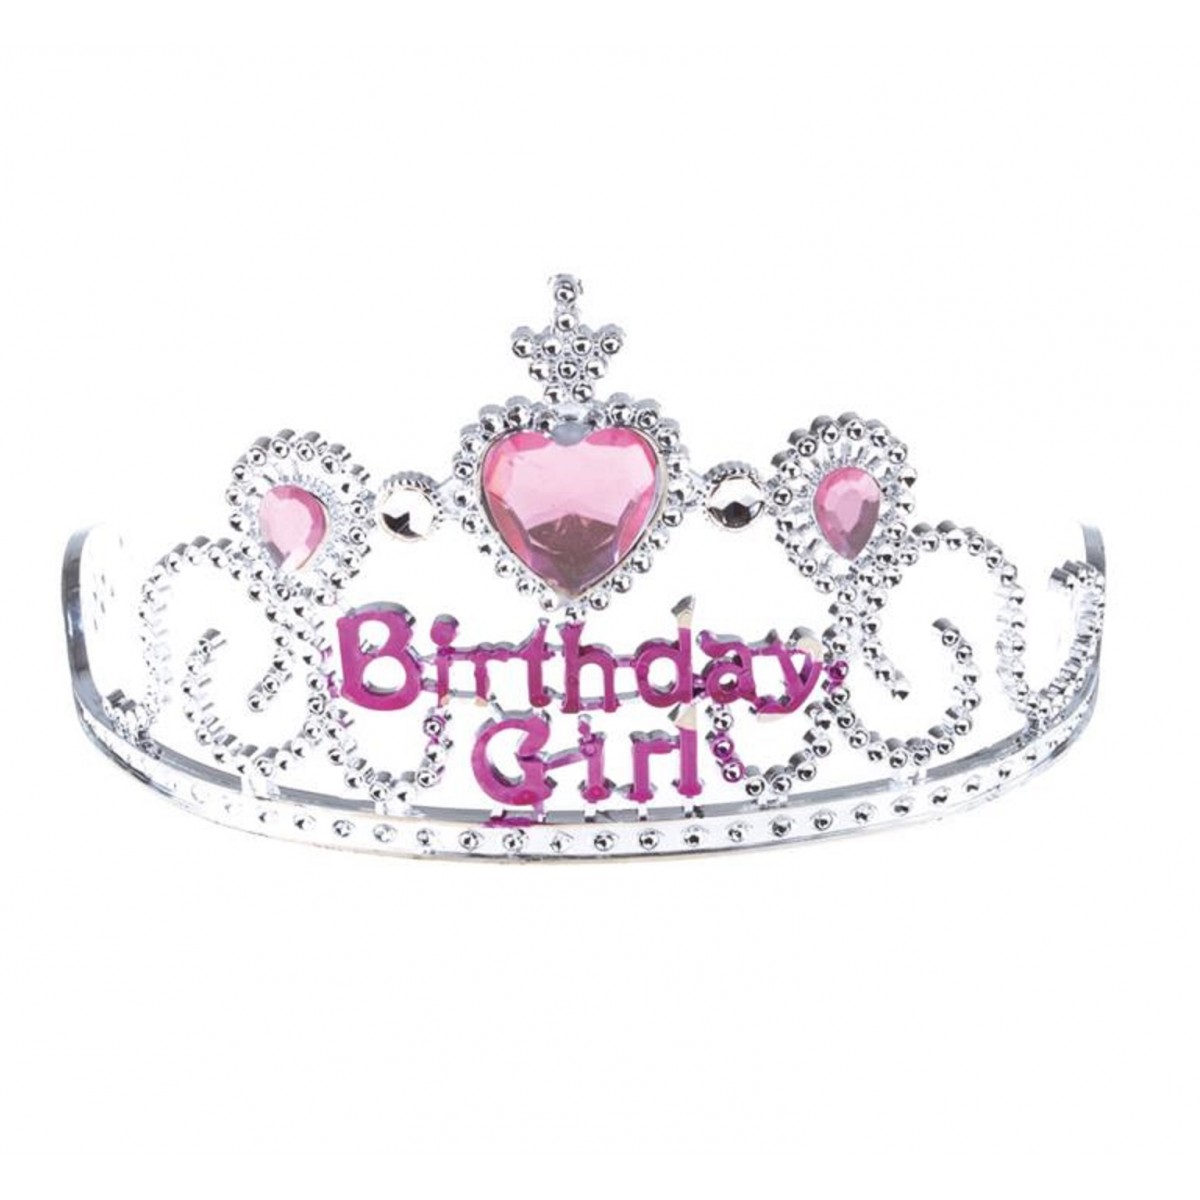 Birthday Girl Corona Tiara Strass Cristallo Gioielli Birthday Queen Fascia Sash per Feste di Compleanno o Torte di Compleanno Decorazioni REYOK Compleanno Ragazza Tiara Corona